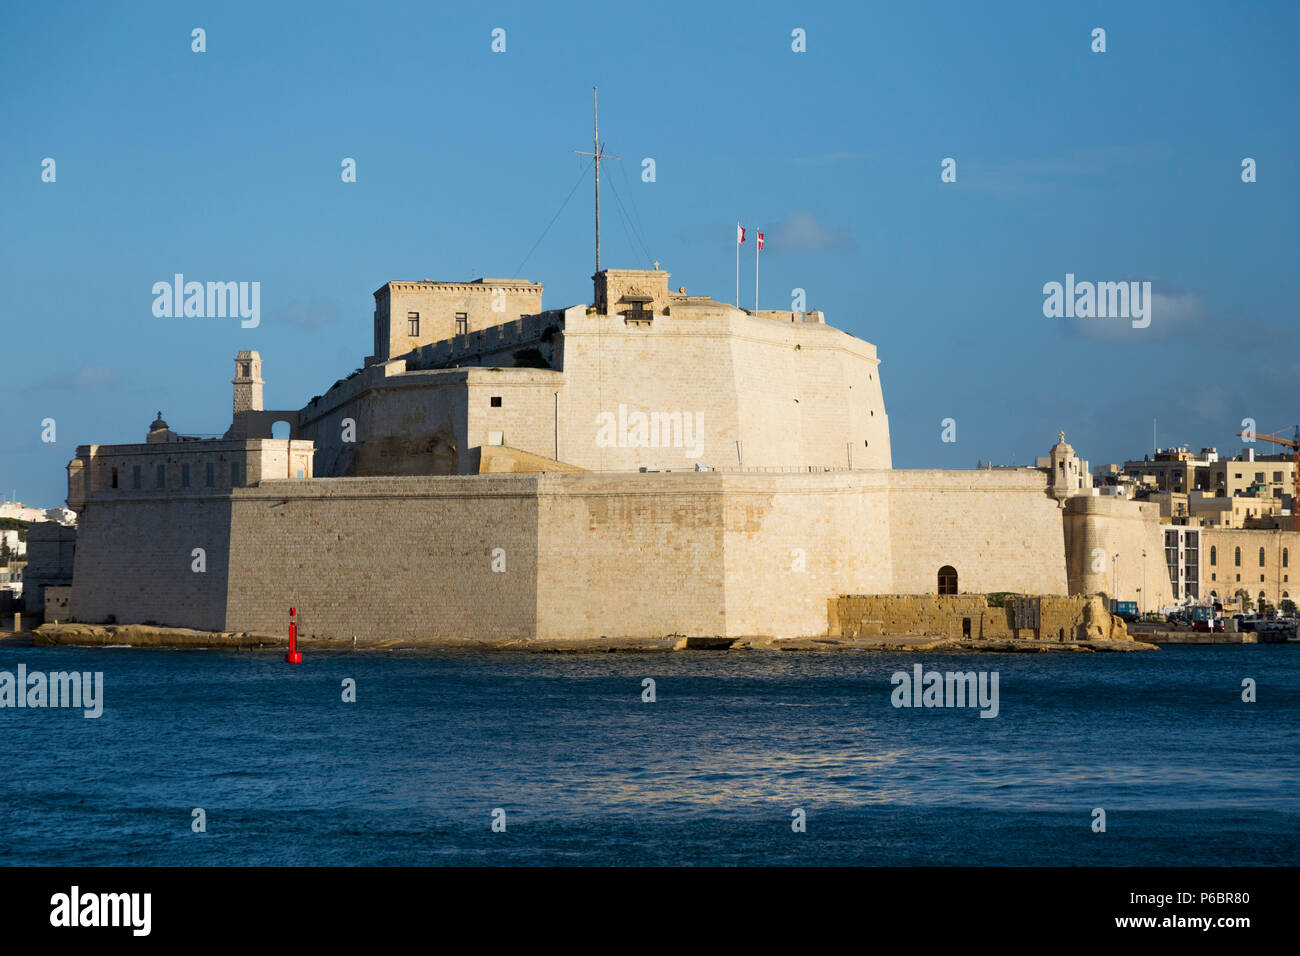 El Fuerte de San Angelo / Fort San Angelo es una fortaleza abaluartada en Birgu, Malta, situado en el centro del Gran Puerto. Isla de Malta. (91) Foto de stock